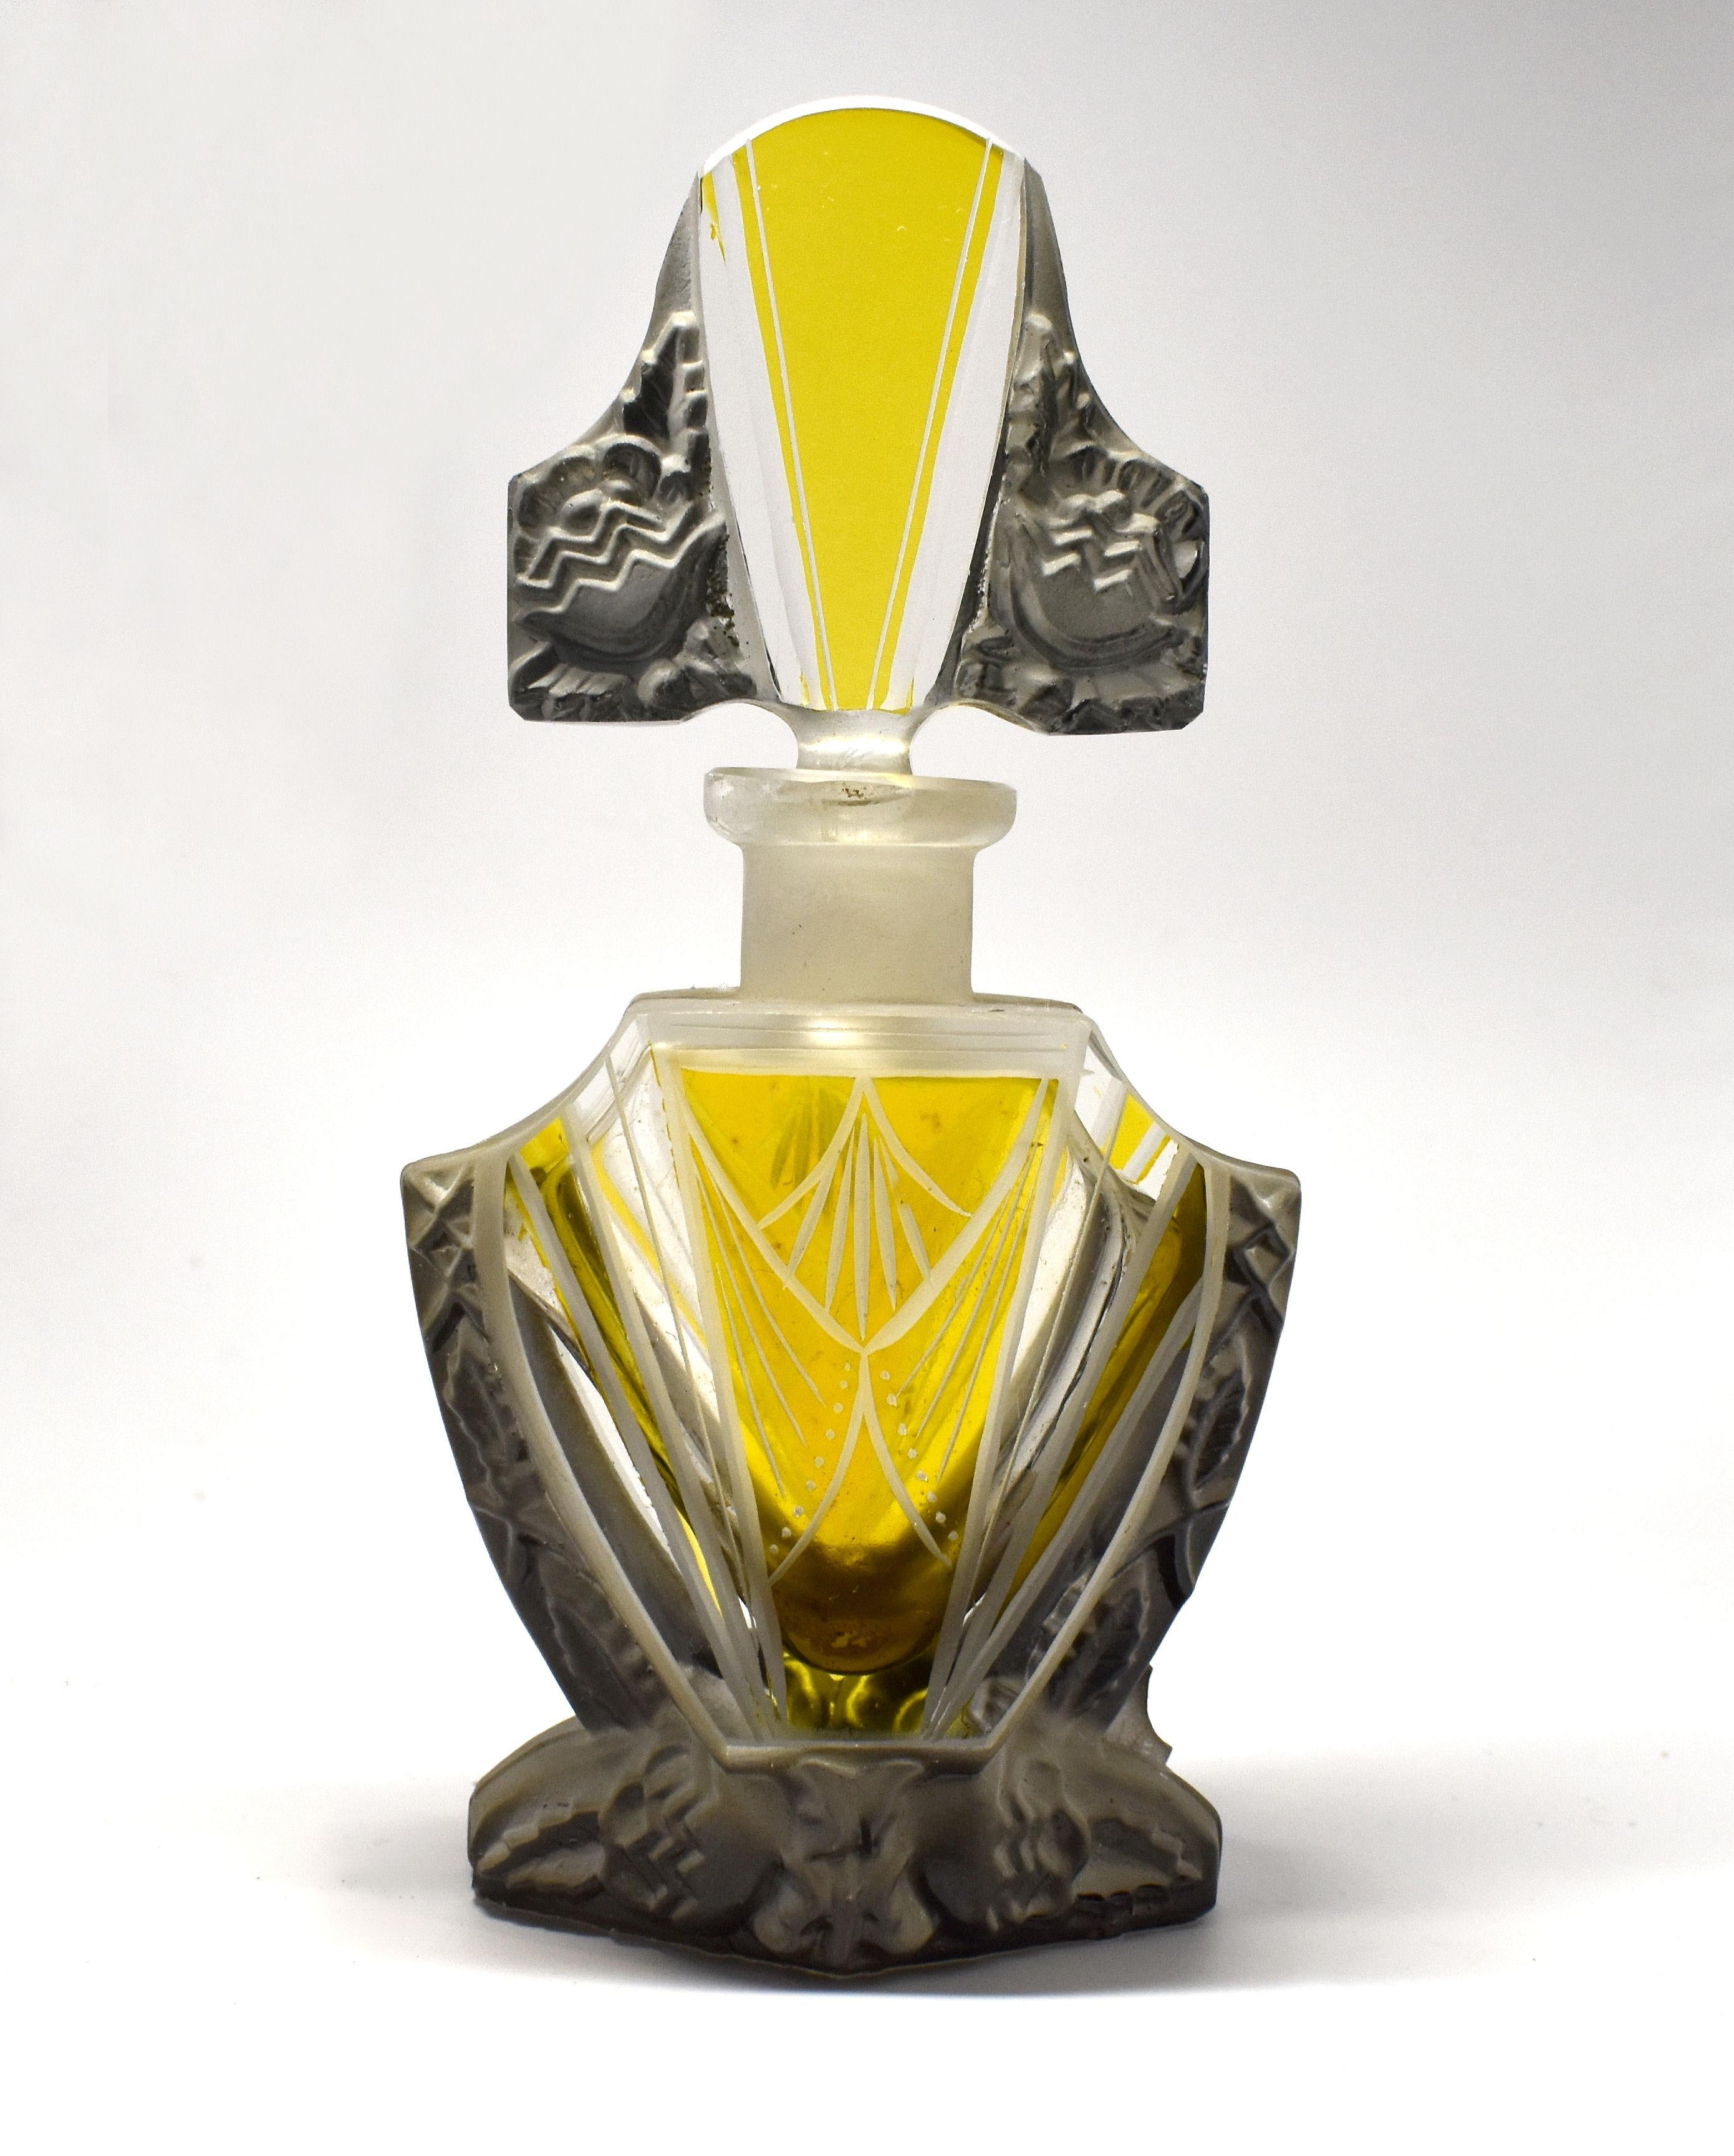 Wir bieten Ihnen diesen fabelhaften Art-Déco-Parfümflakon an. Er besteht aus detailreichem, facettiert geschliffenem Glas mit säuremattierten Reliefs in klarem Glas und wurde von Curt Schlevogt hergestellt, der 1928 sein eigenes Glasunternehmen